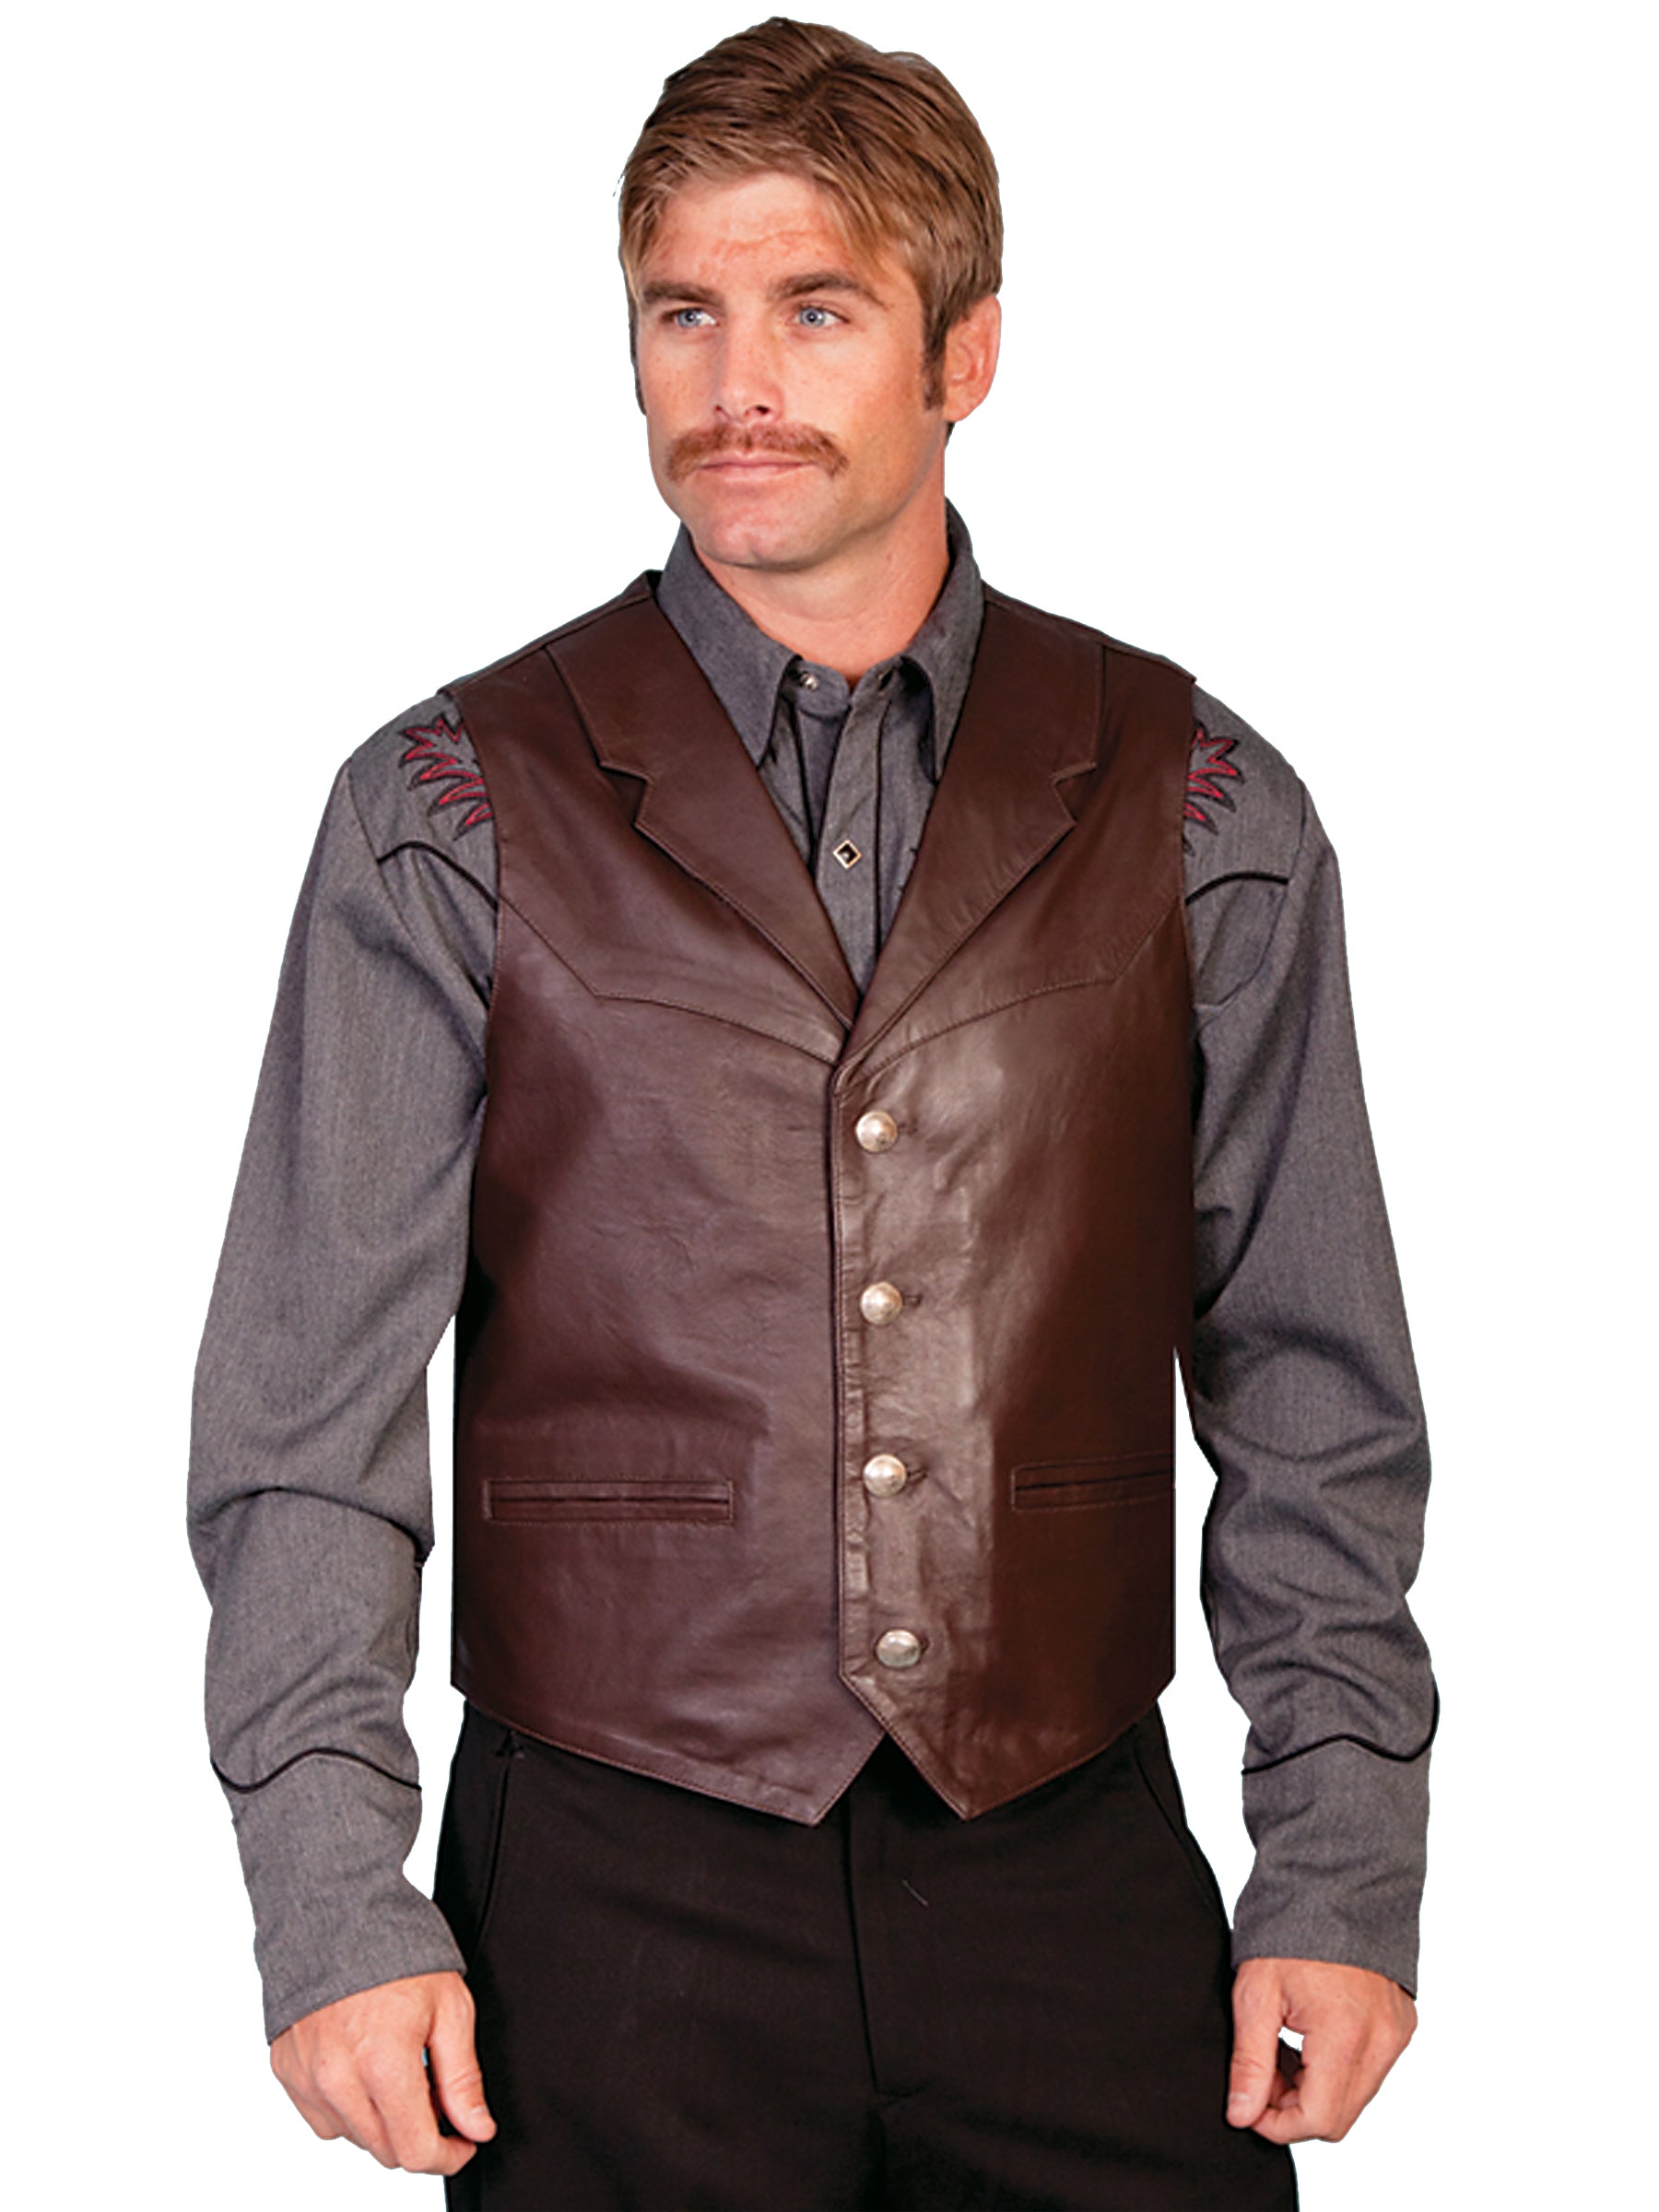 Vest with peak lapelProductZhejiang Pasteur Garment coLTD